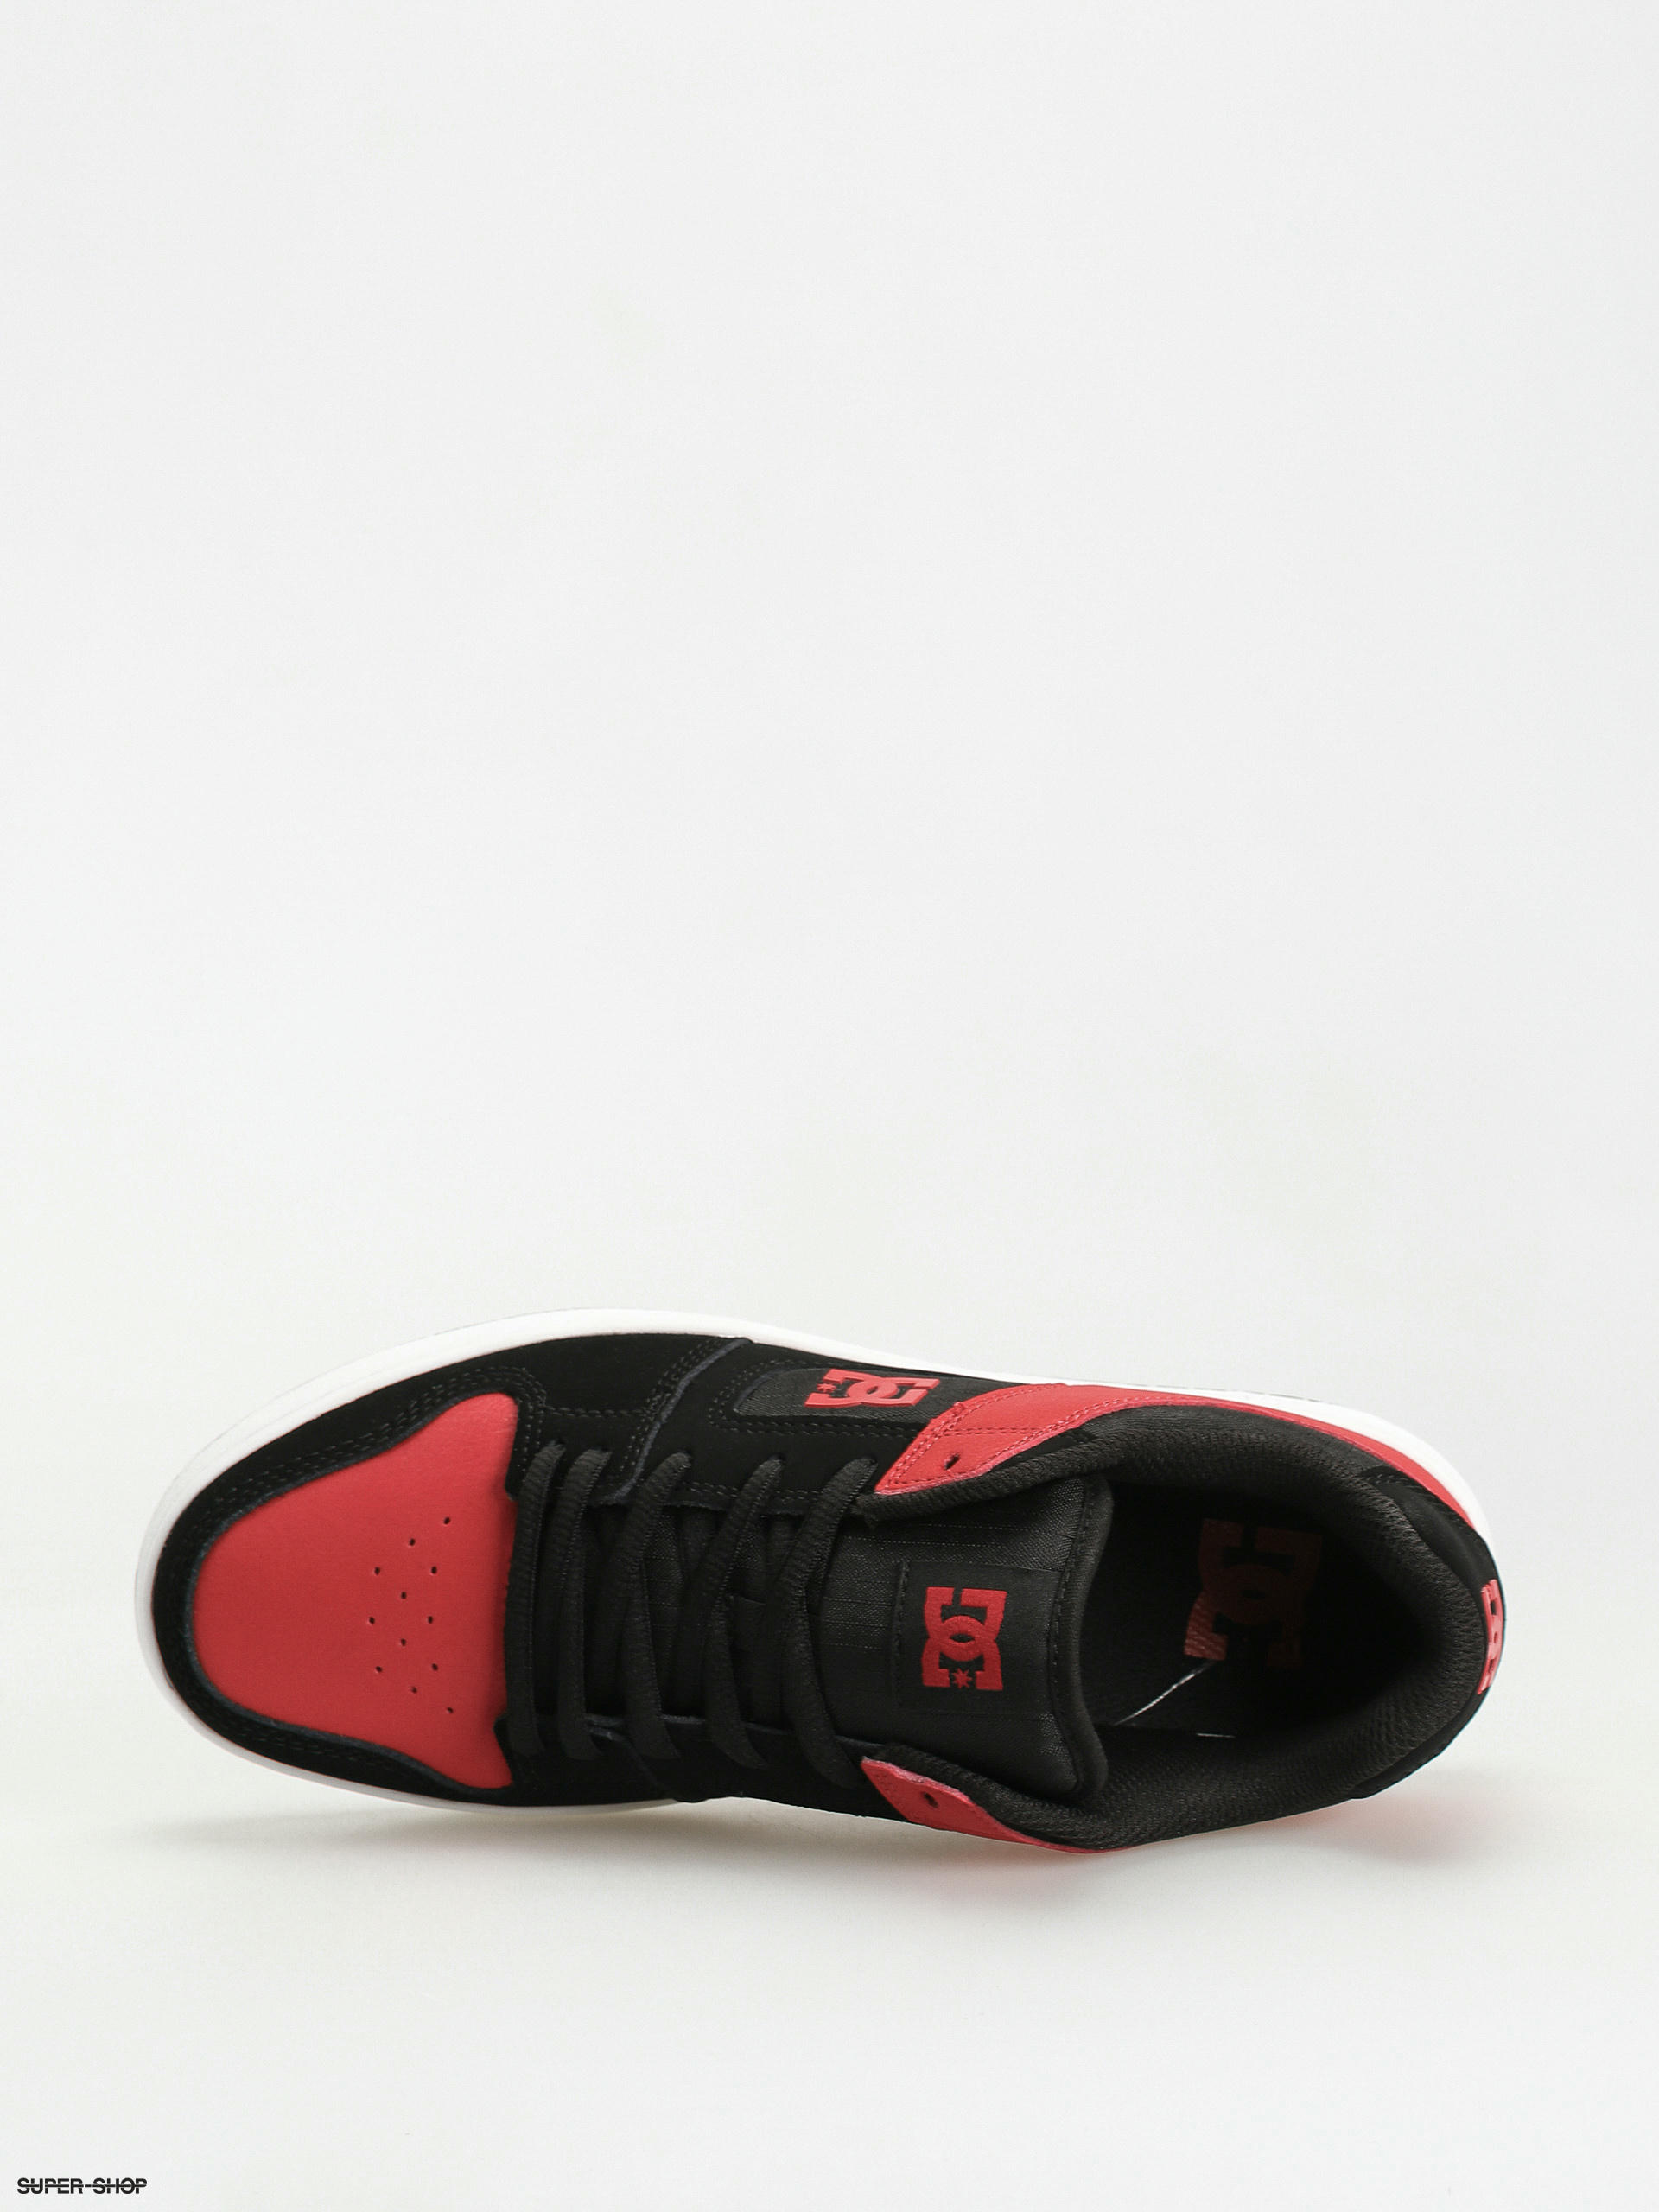 Mens DC Manteca 4 Skate Shoe - Black / Red